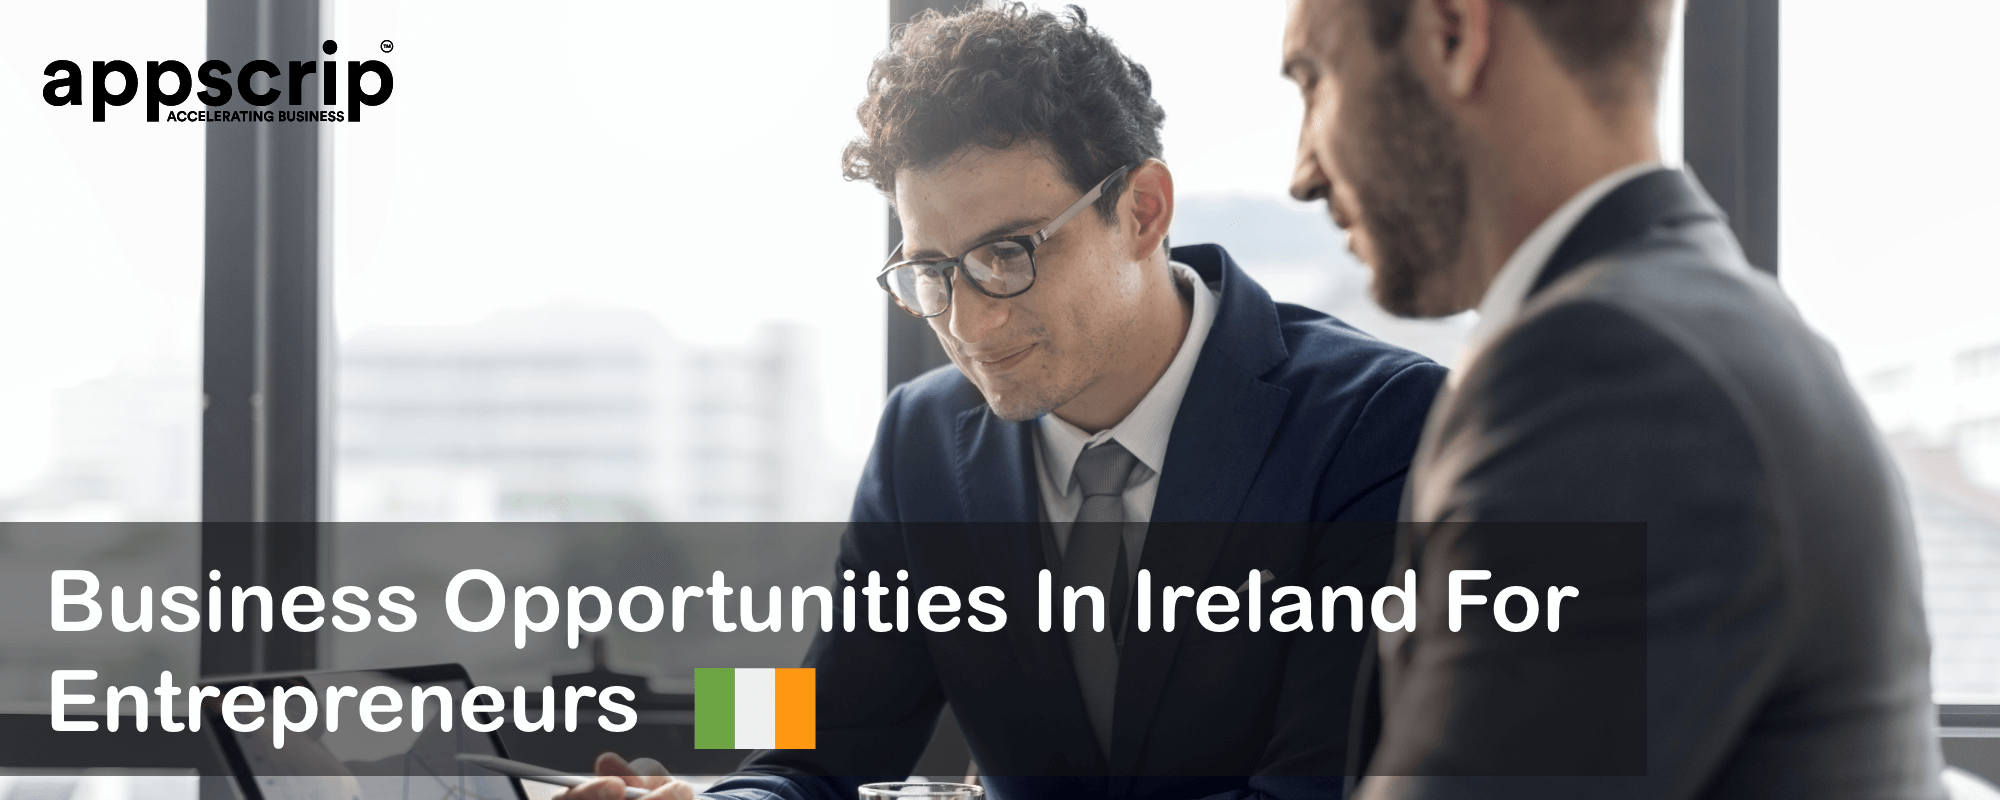 Business Opportunities In Ireland